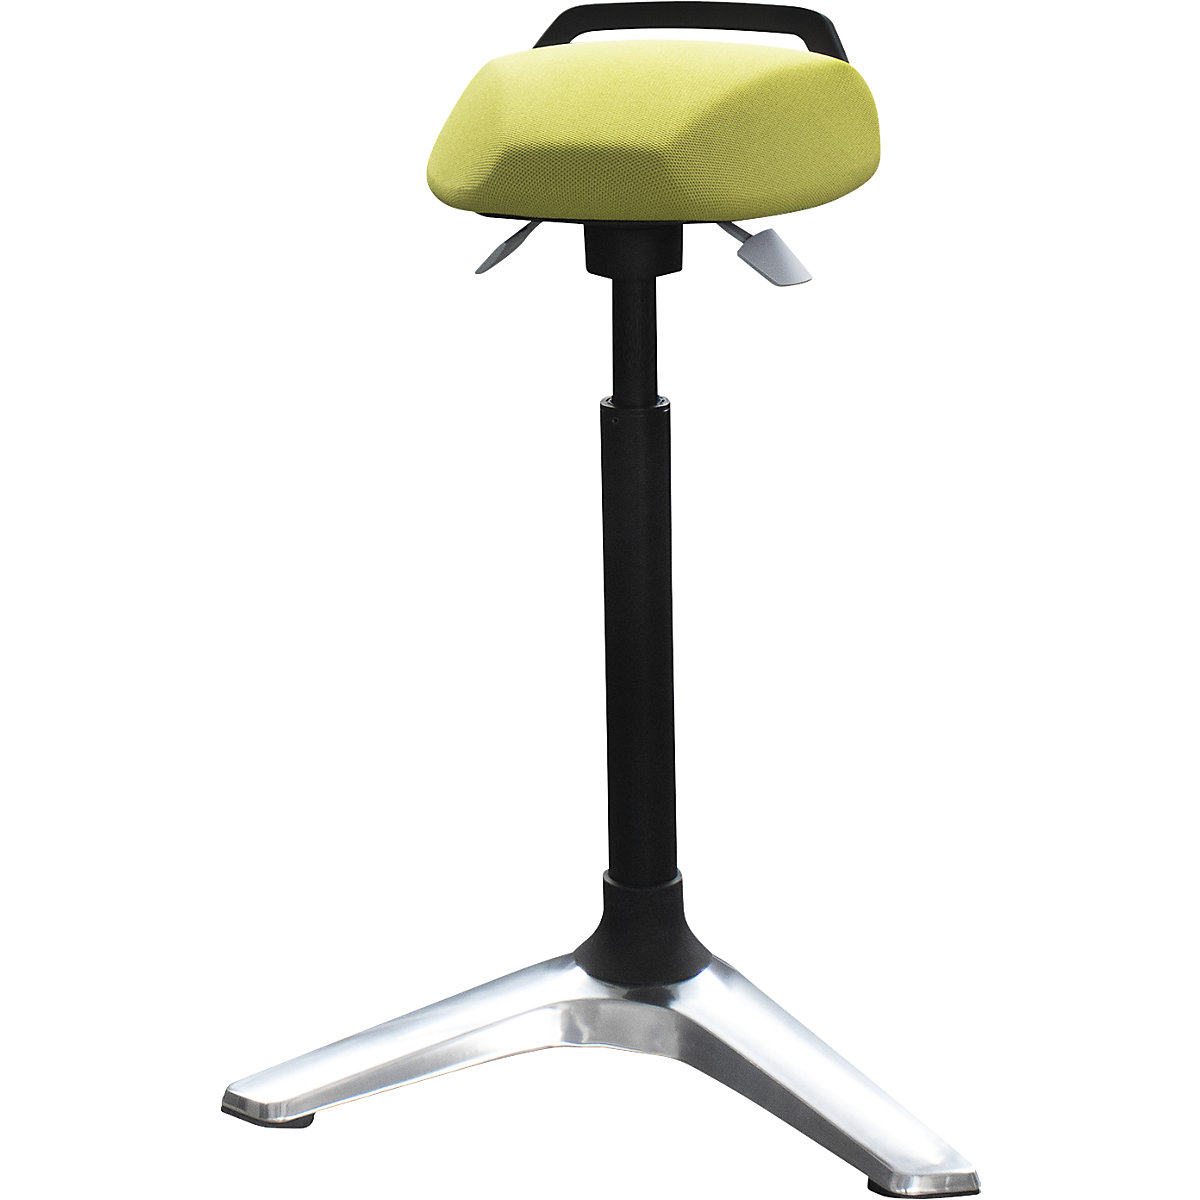 SST1 anti-fatigue stool